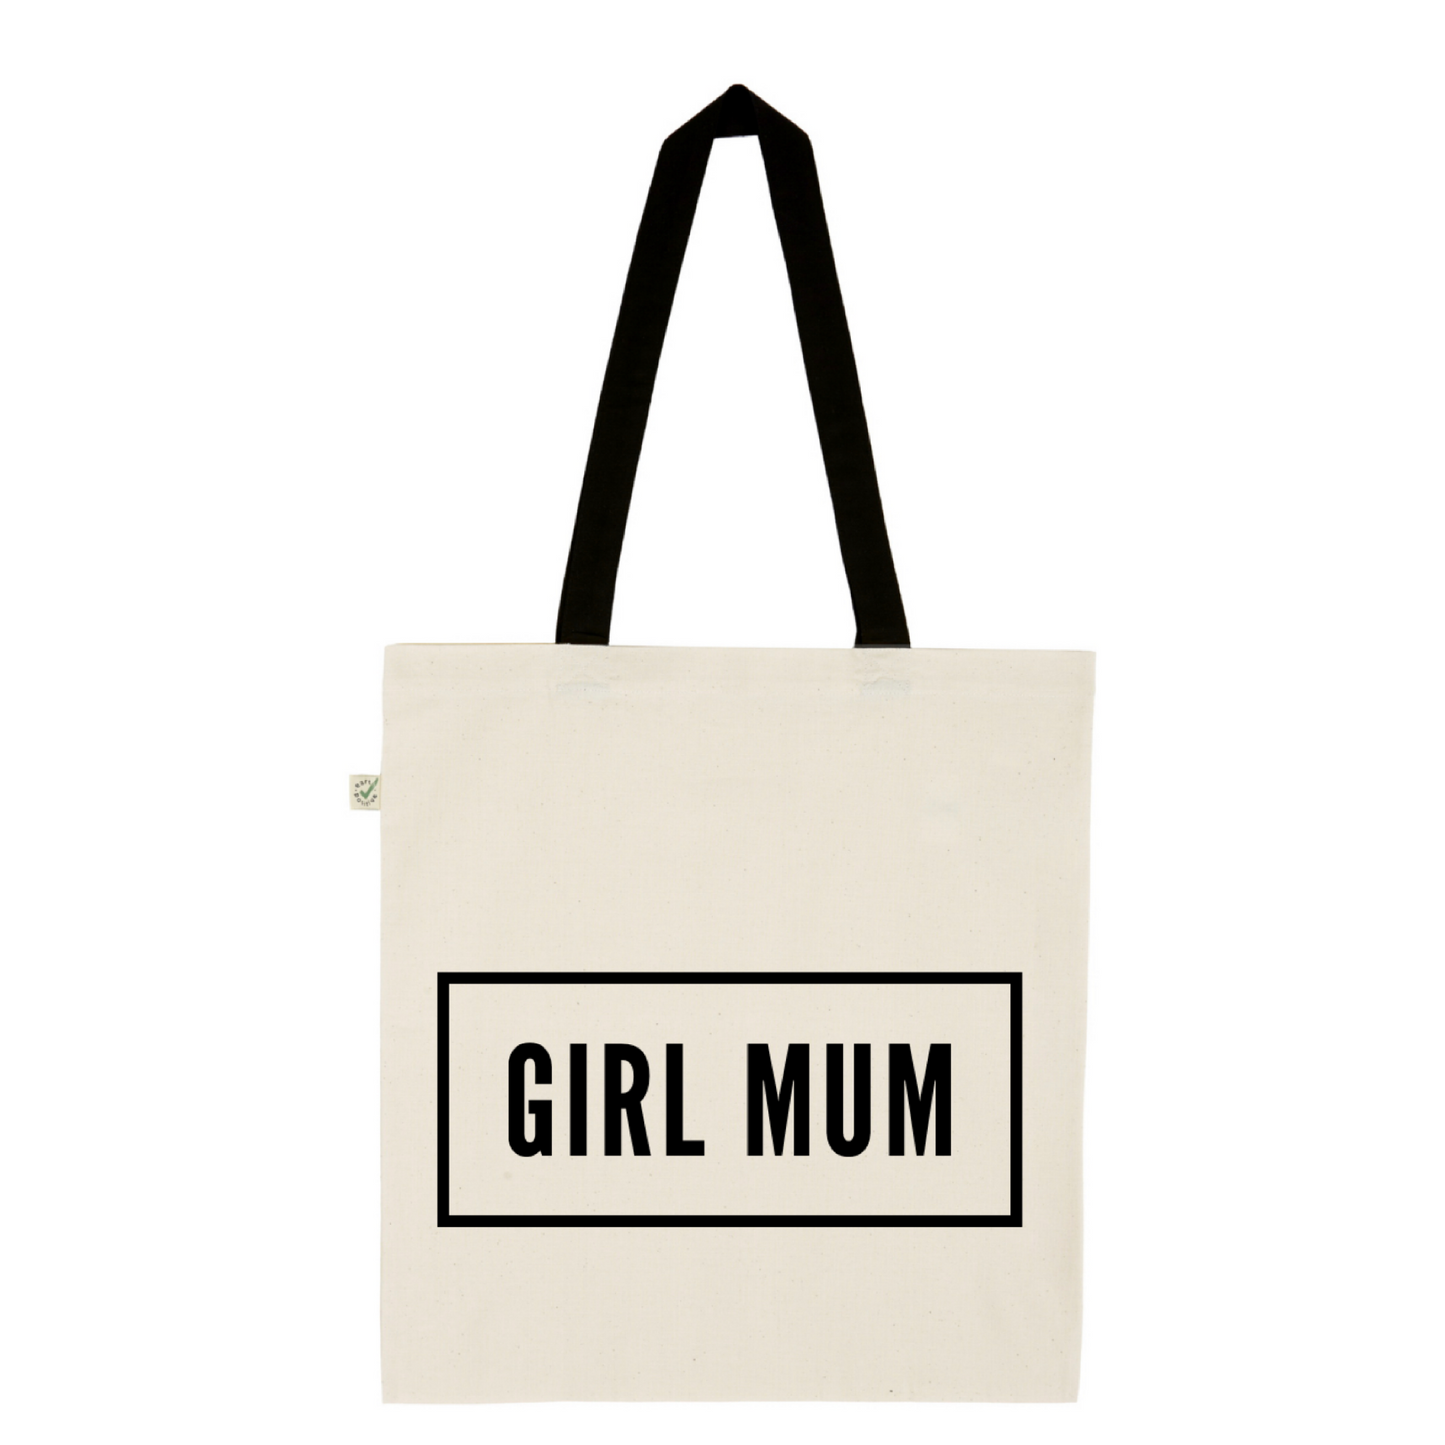 Girl mum - 100% organic cotton tote